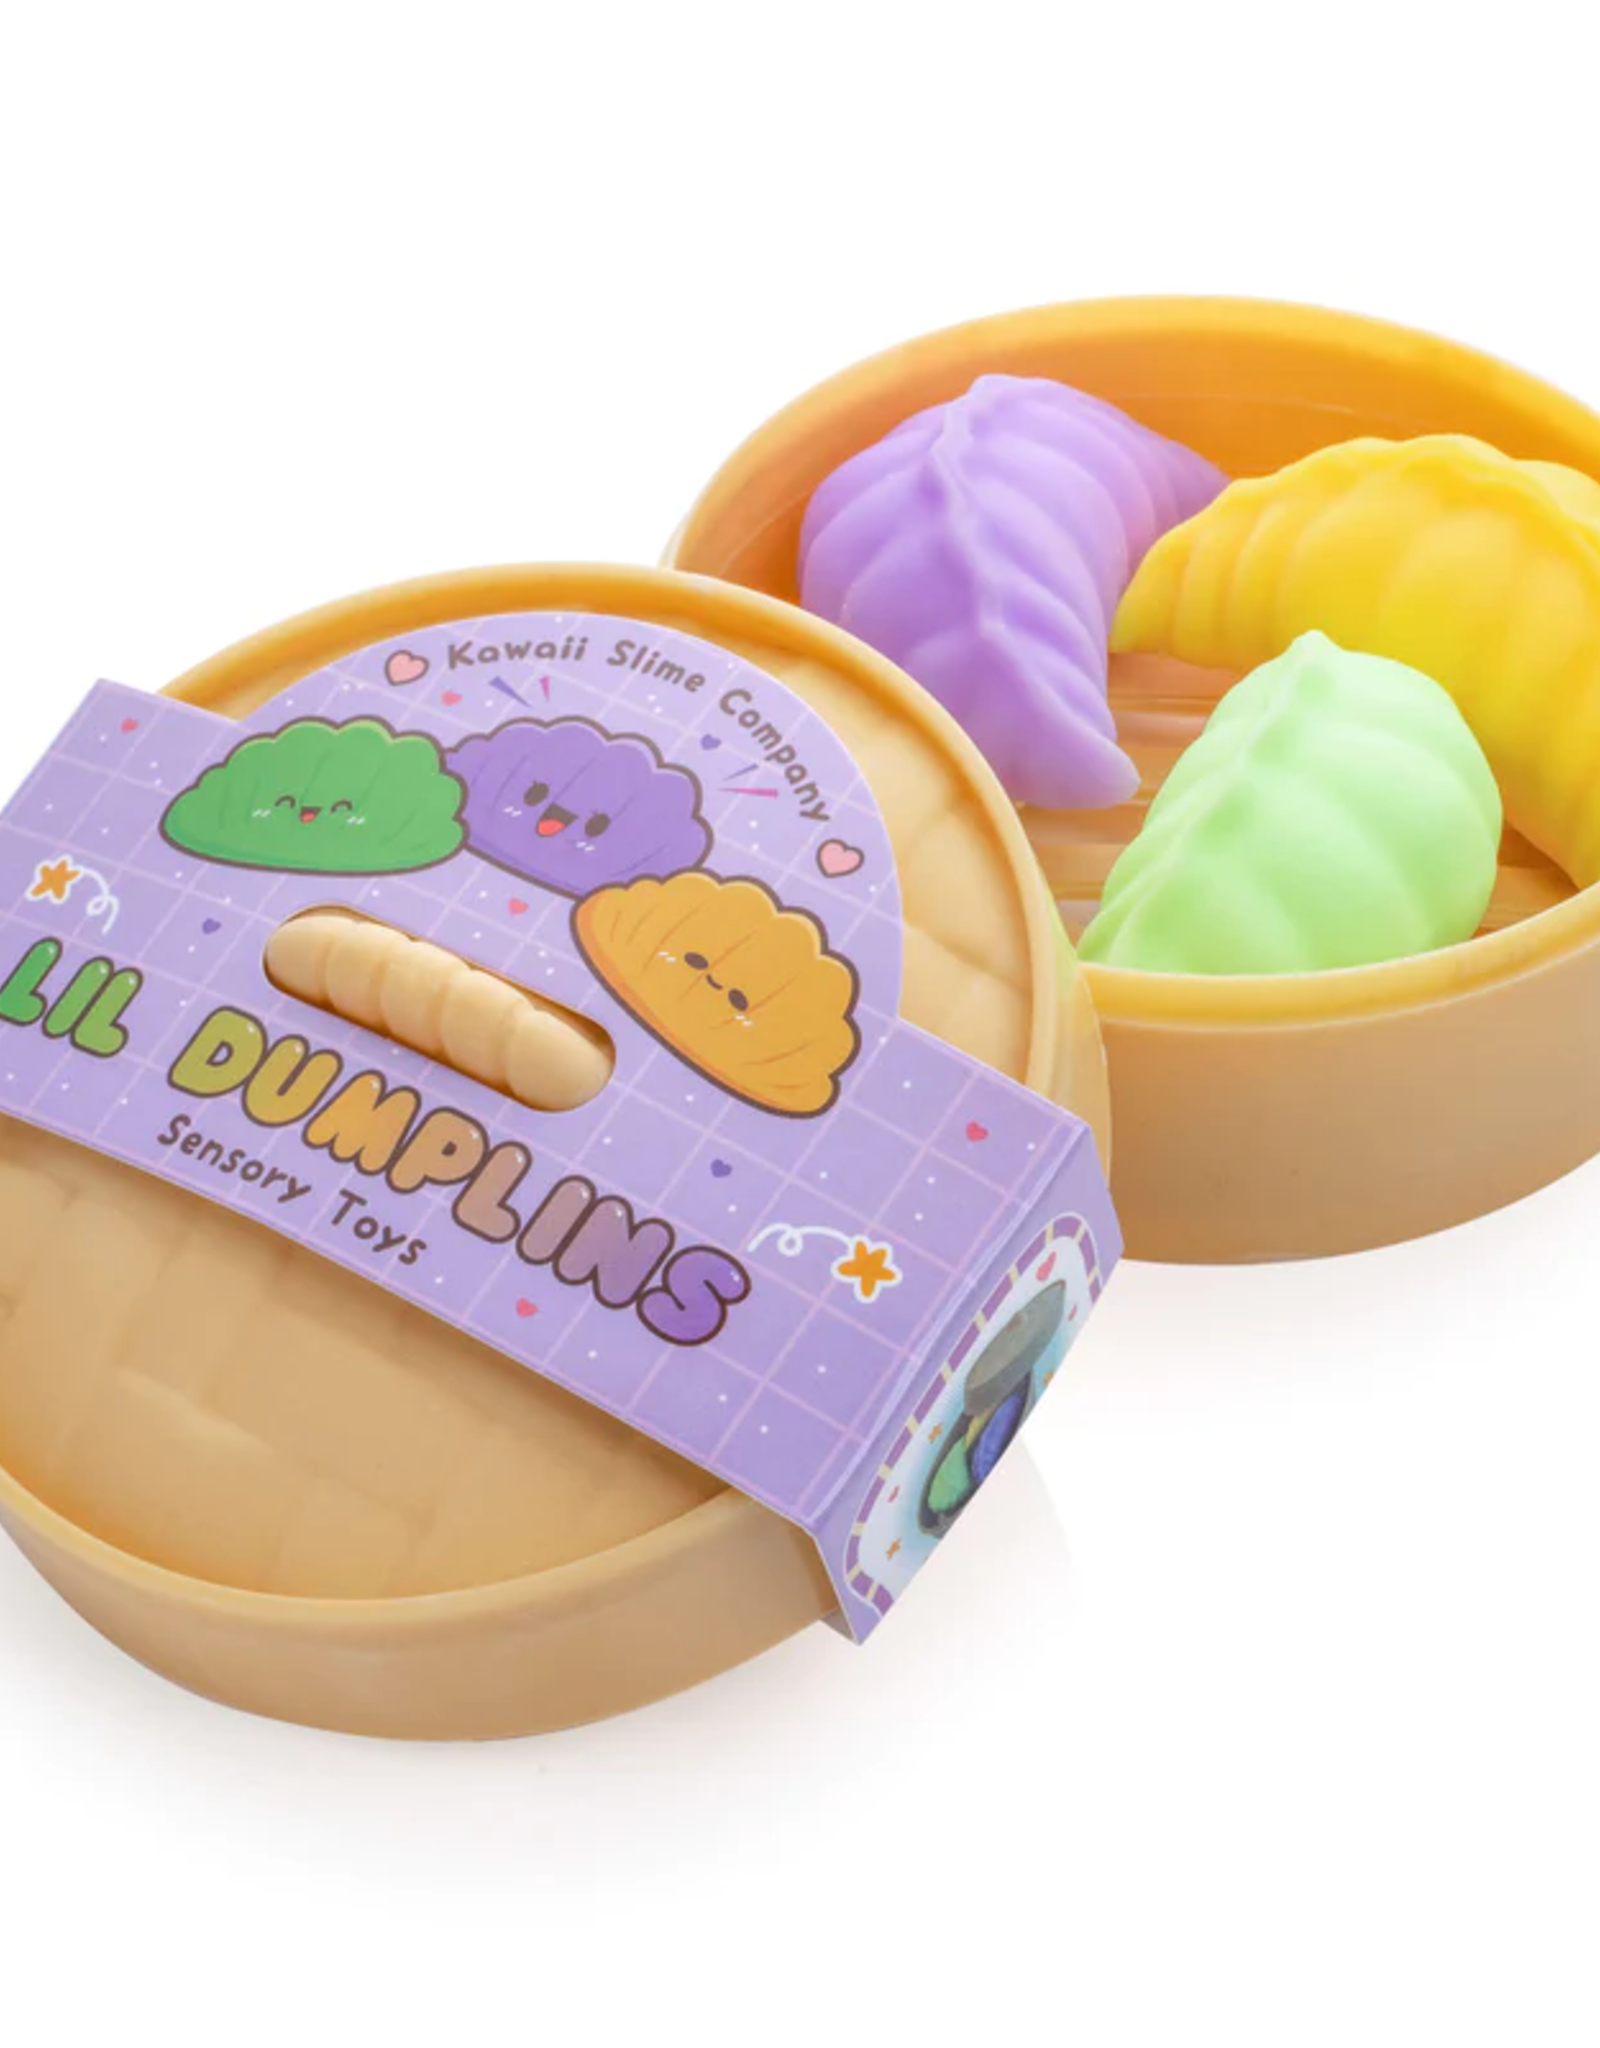 Kawaii Slime Company Kawaii Slime - Lil Dumplins Bao Sensory Fidgit Toy